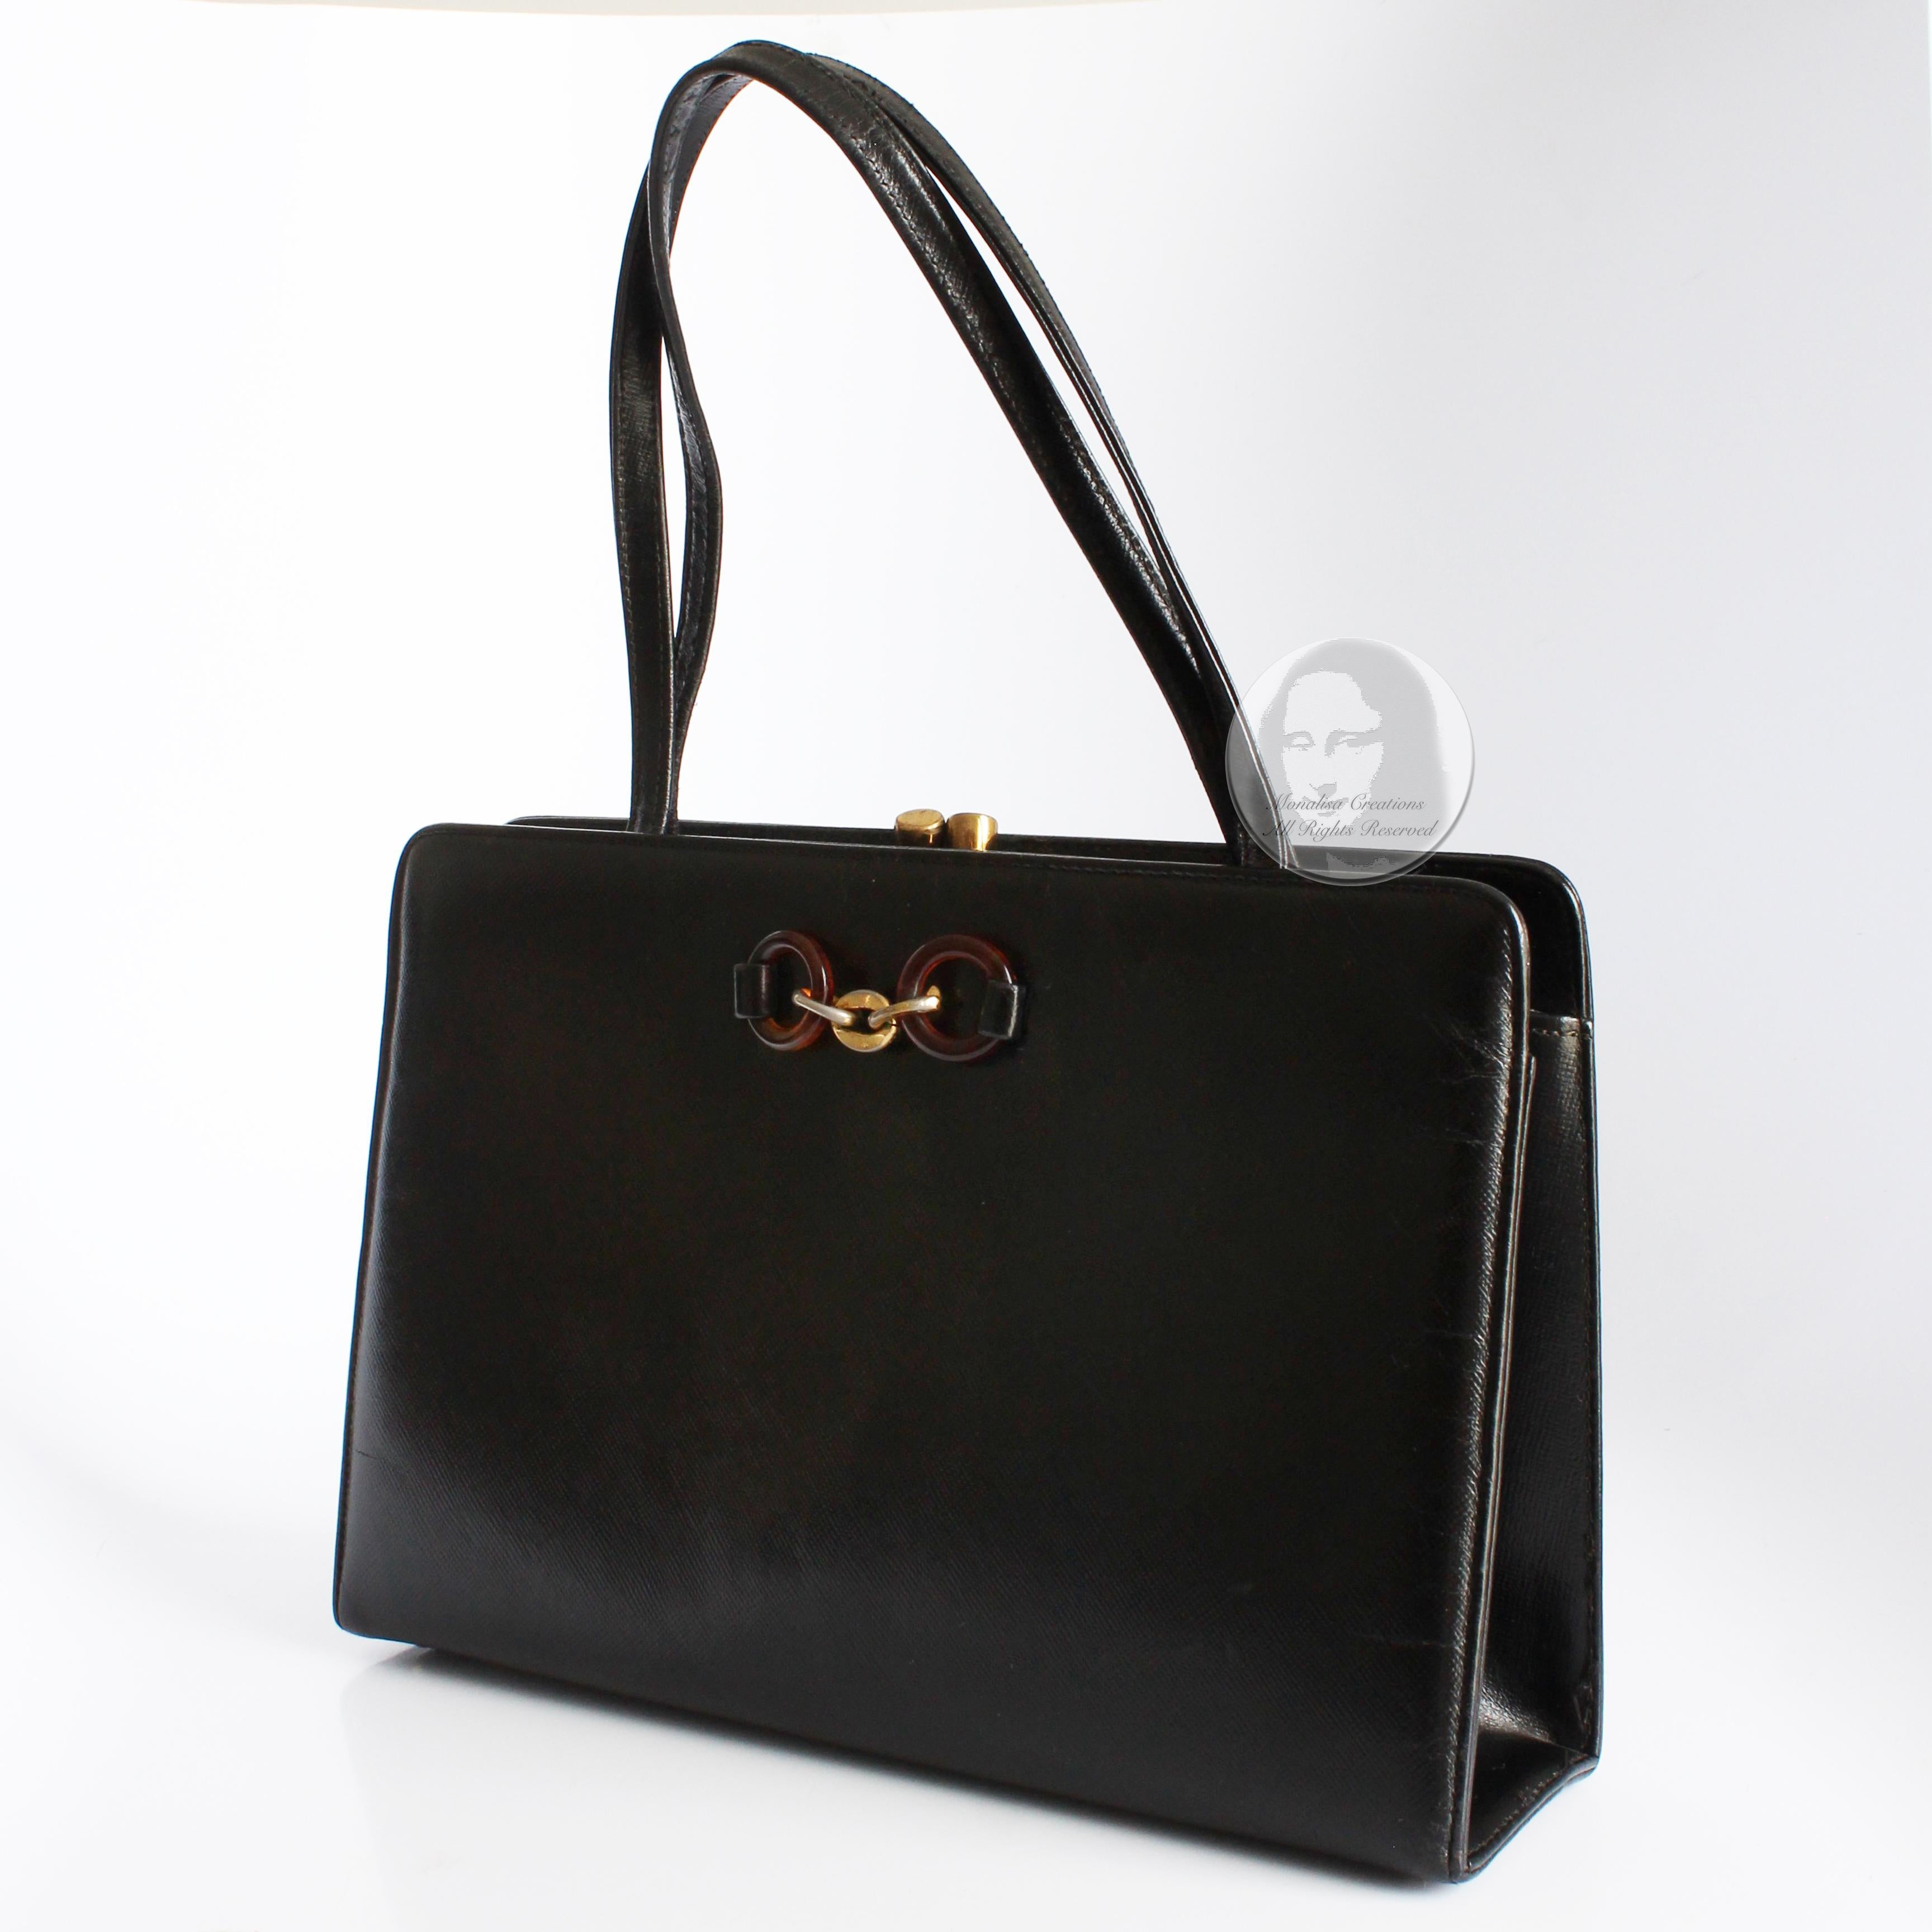 Bienen-Davis Evening Bag Black Saffiano Textured Leather Rare Vintage 1970s For Sale 2